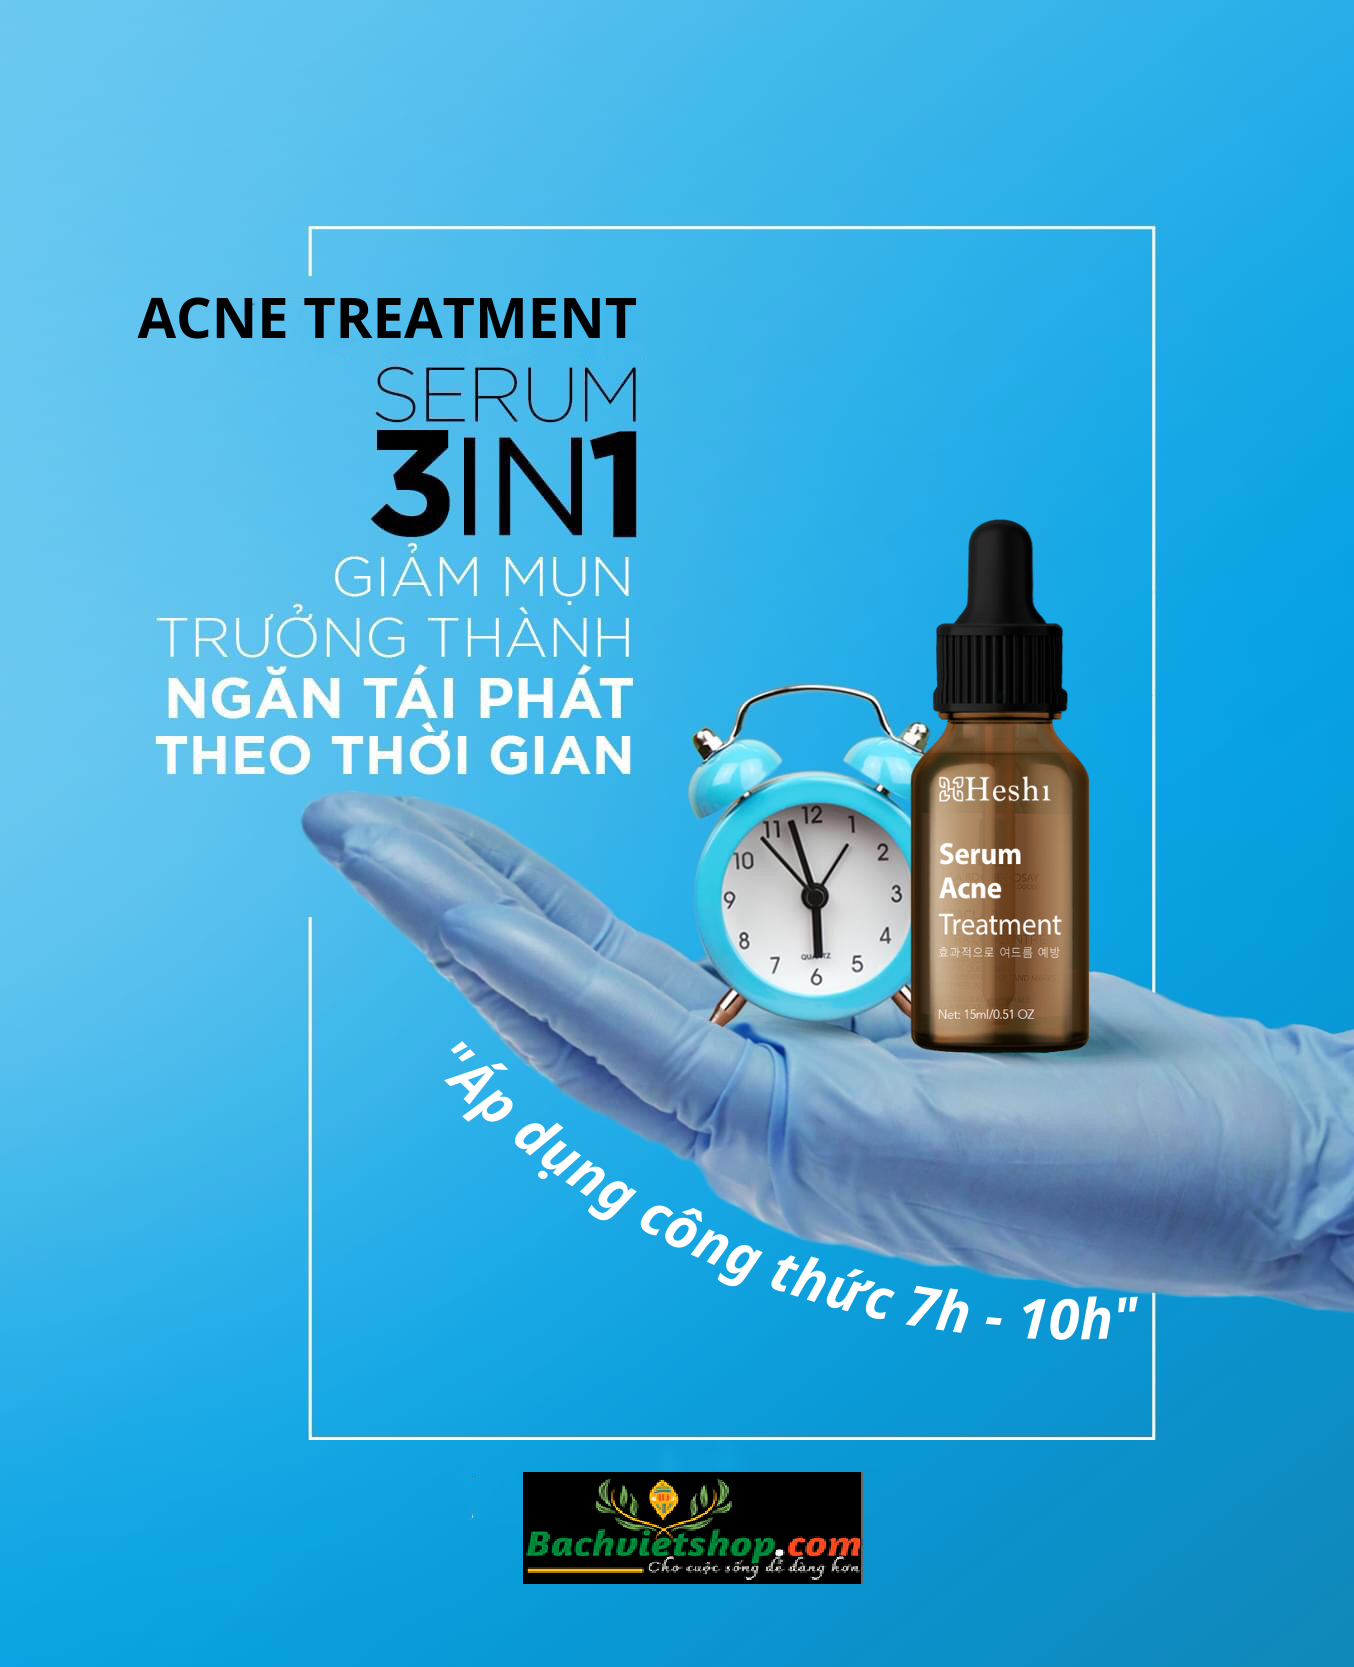 Serum Đặc Trị Mụn Heshi Acne Treatment Dòng 1 - Giải pháp chăm sóc tối ưu cho những làn da mụn!